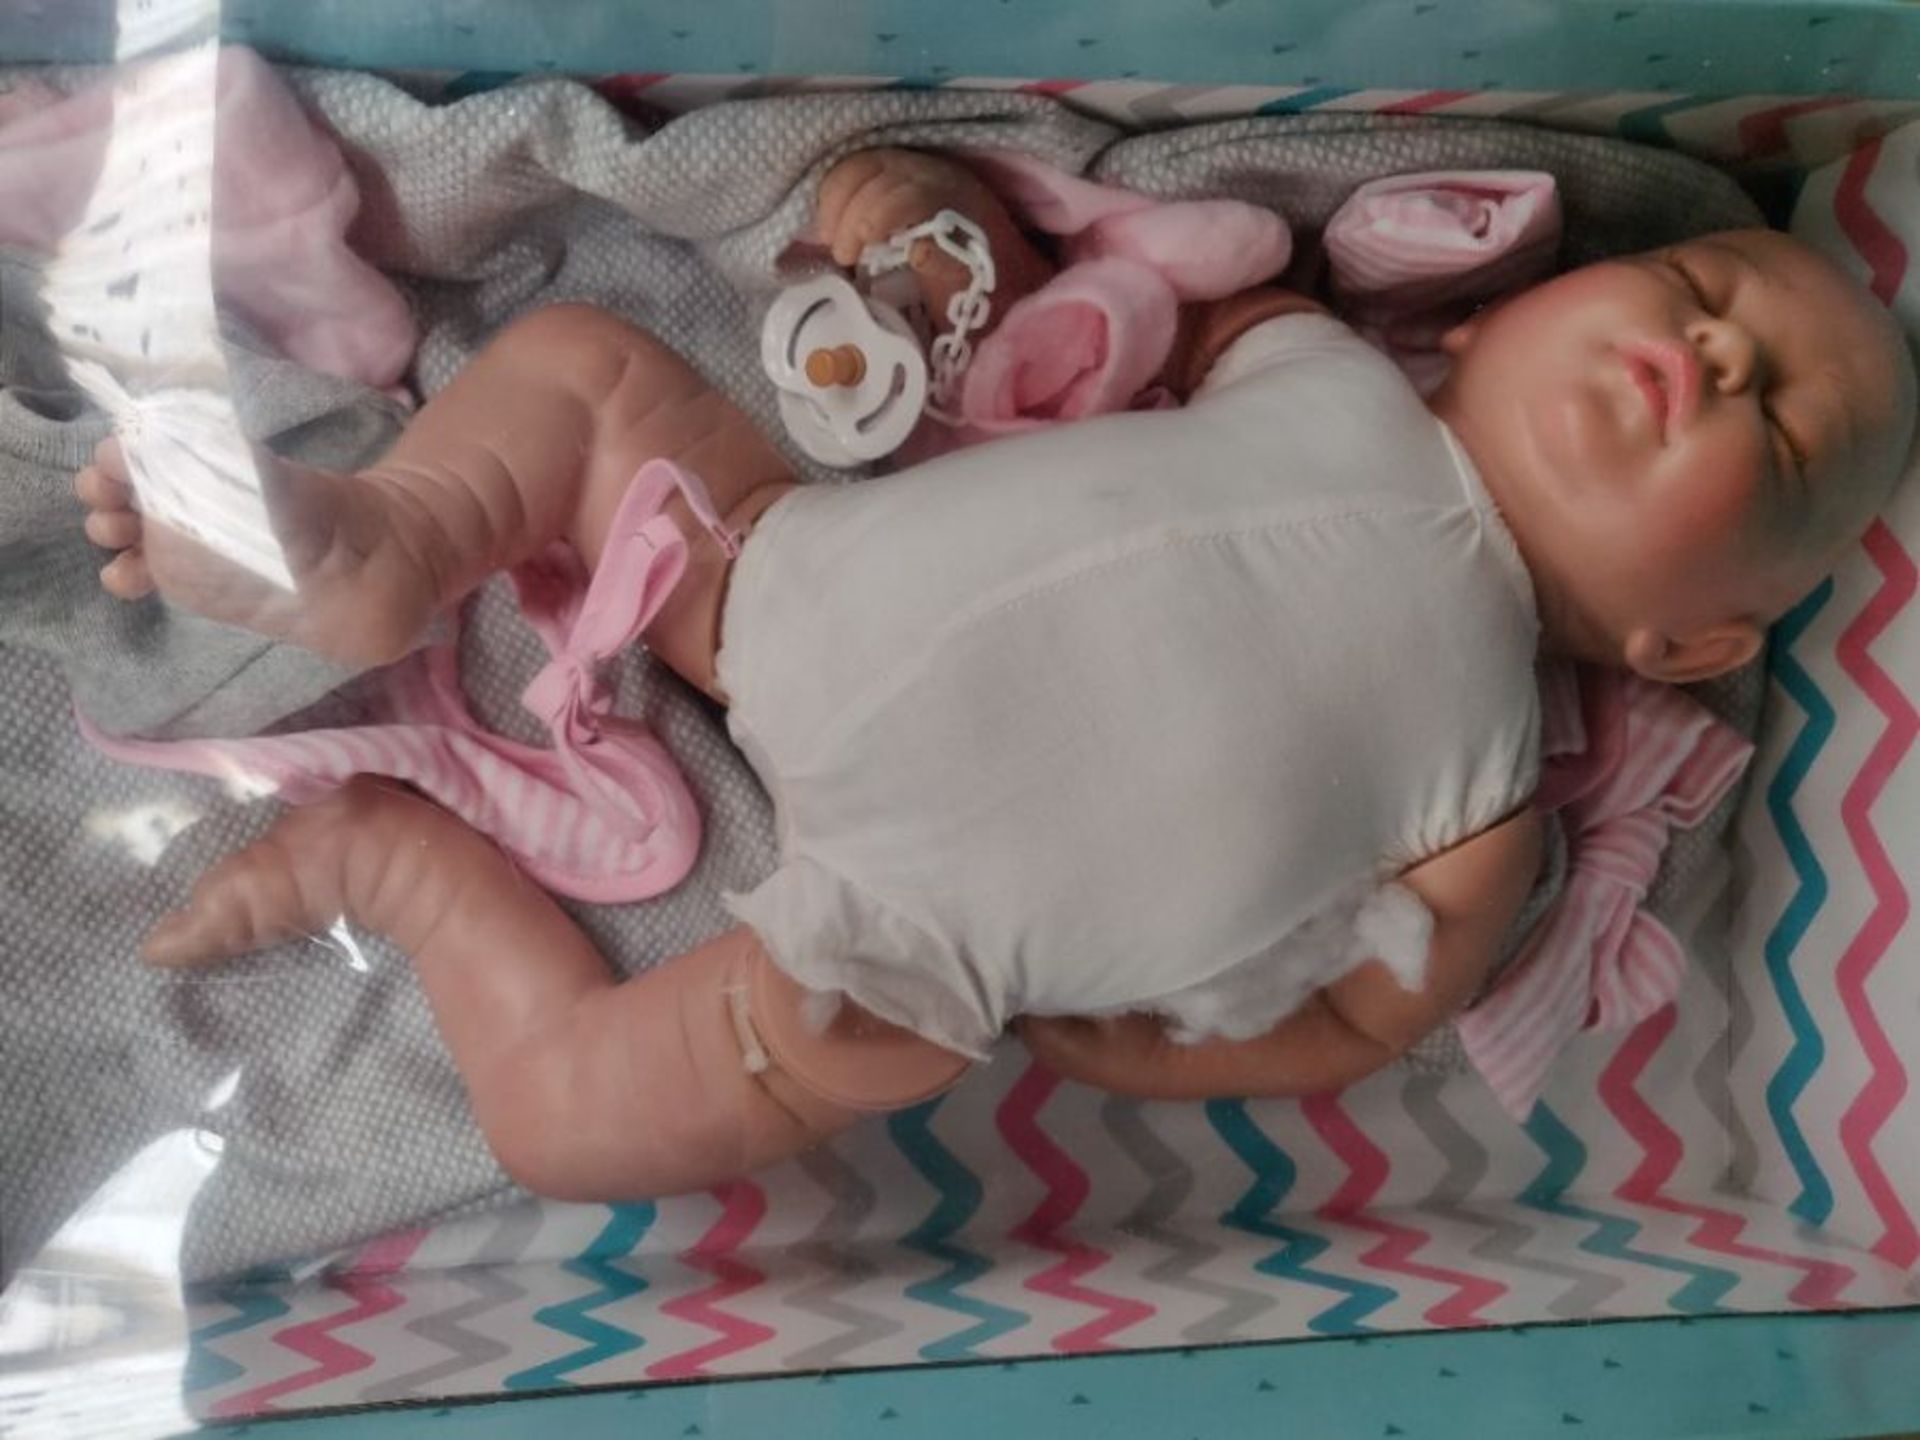 RRP £145.00 [CRACKED] Puppe Guca - Puppe Reborn Emma Pyjamita grau mit Lätzchen, Musselin und Ros - Image 3 of 3